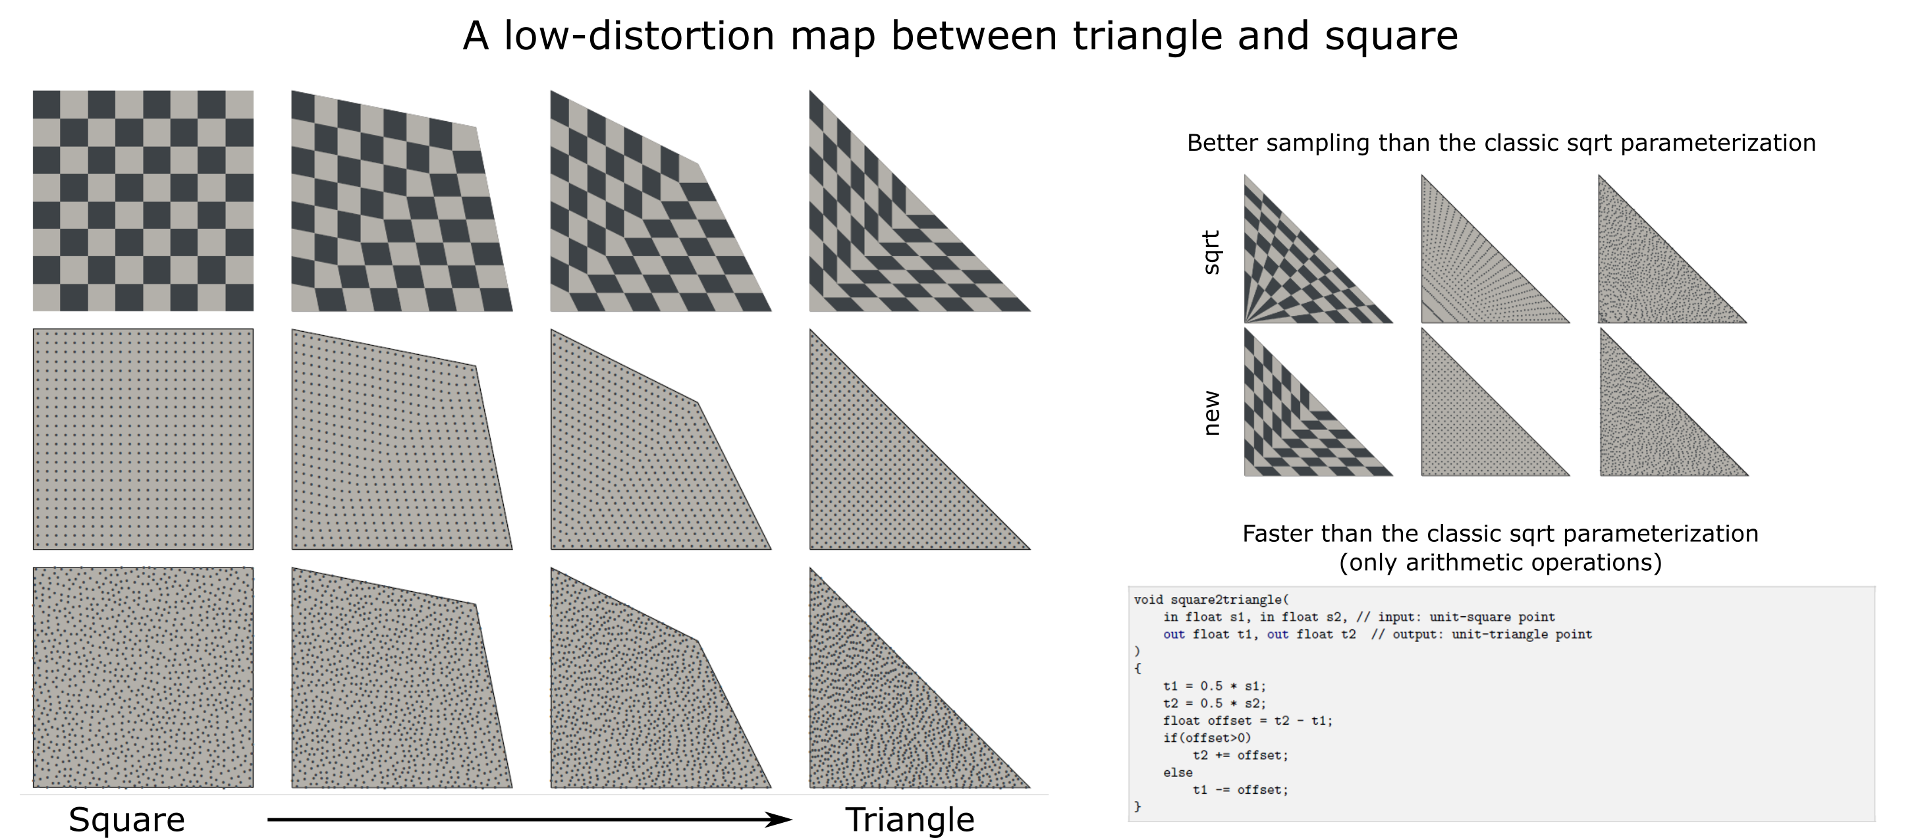 三角形与正方形之间的低失真地图